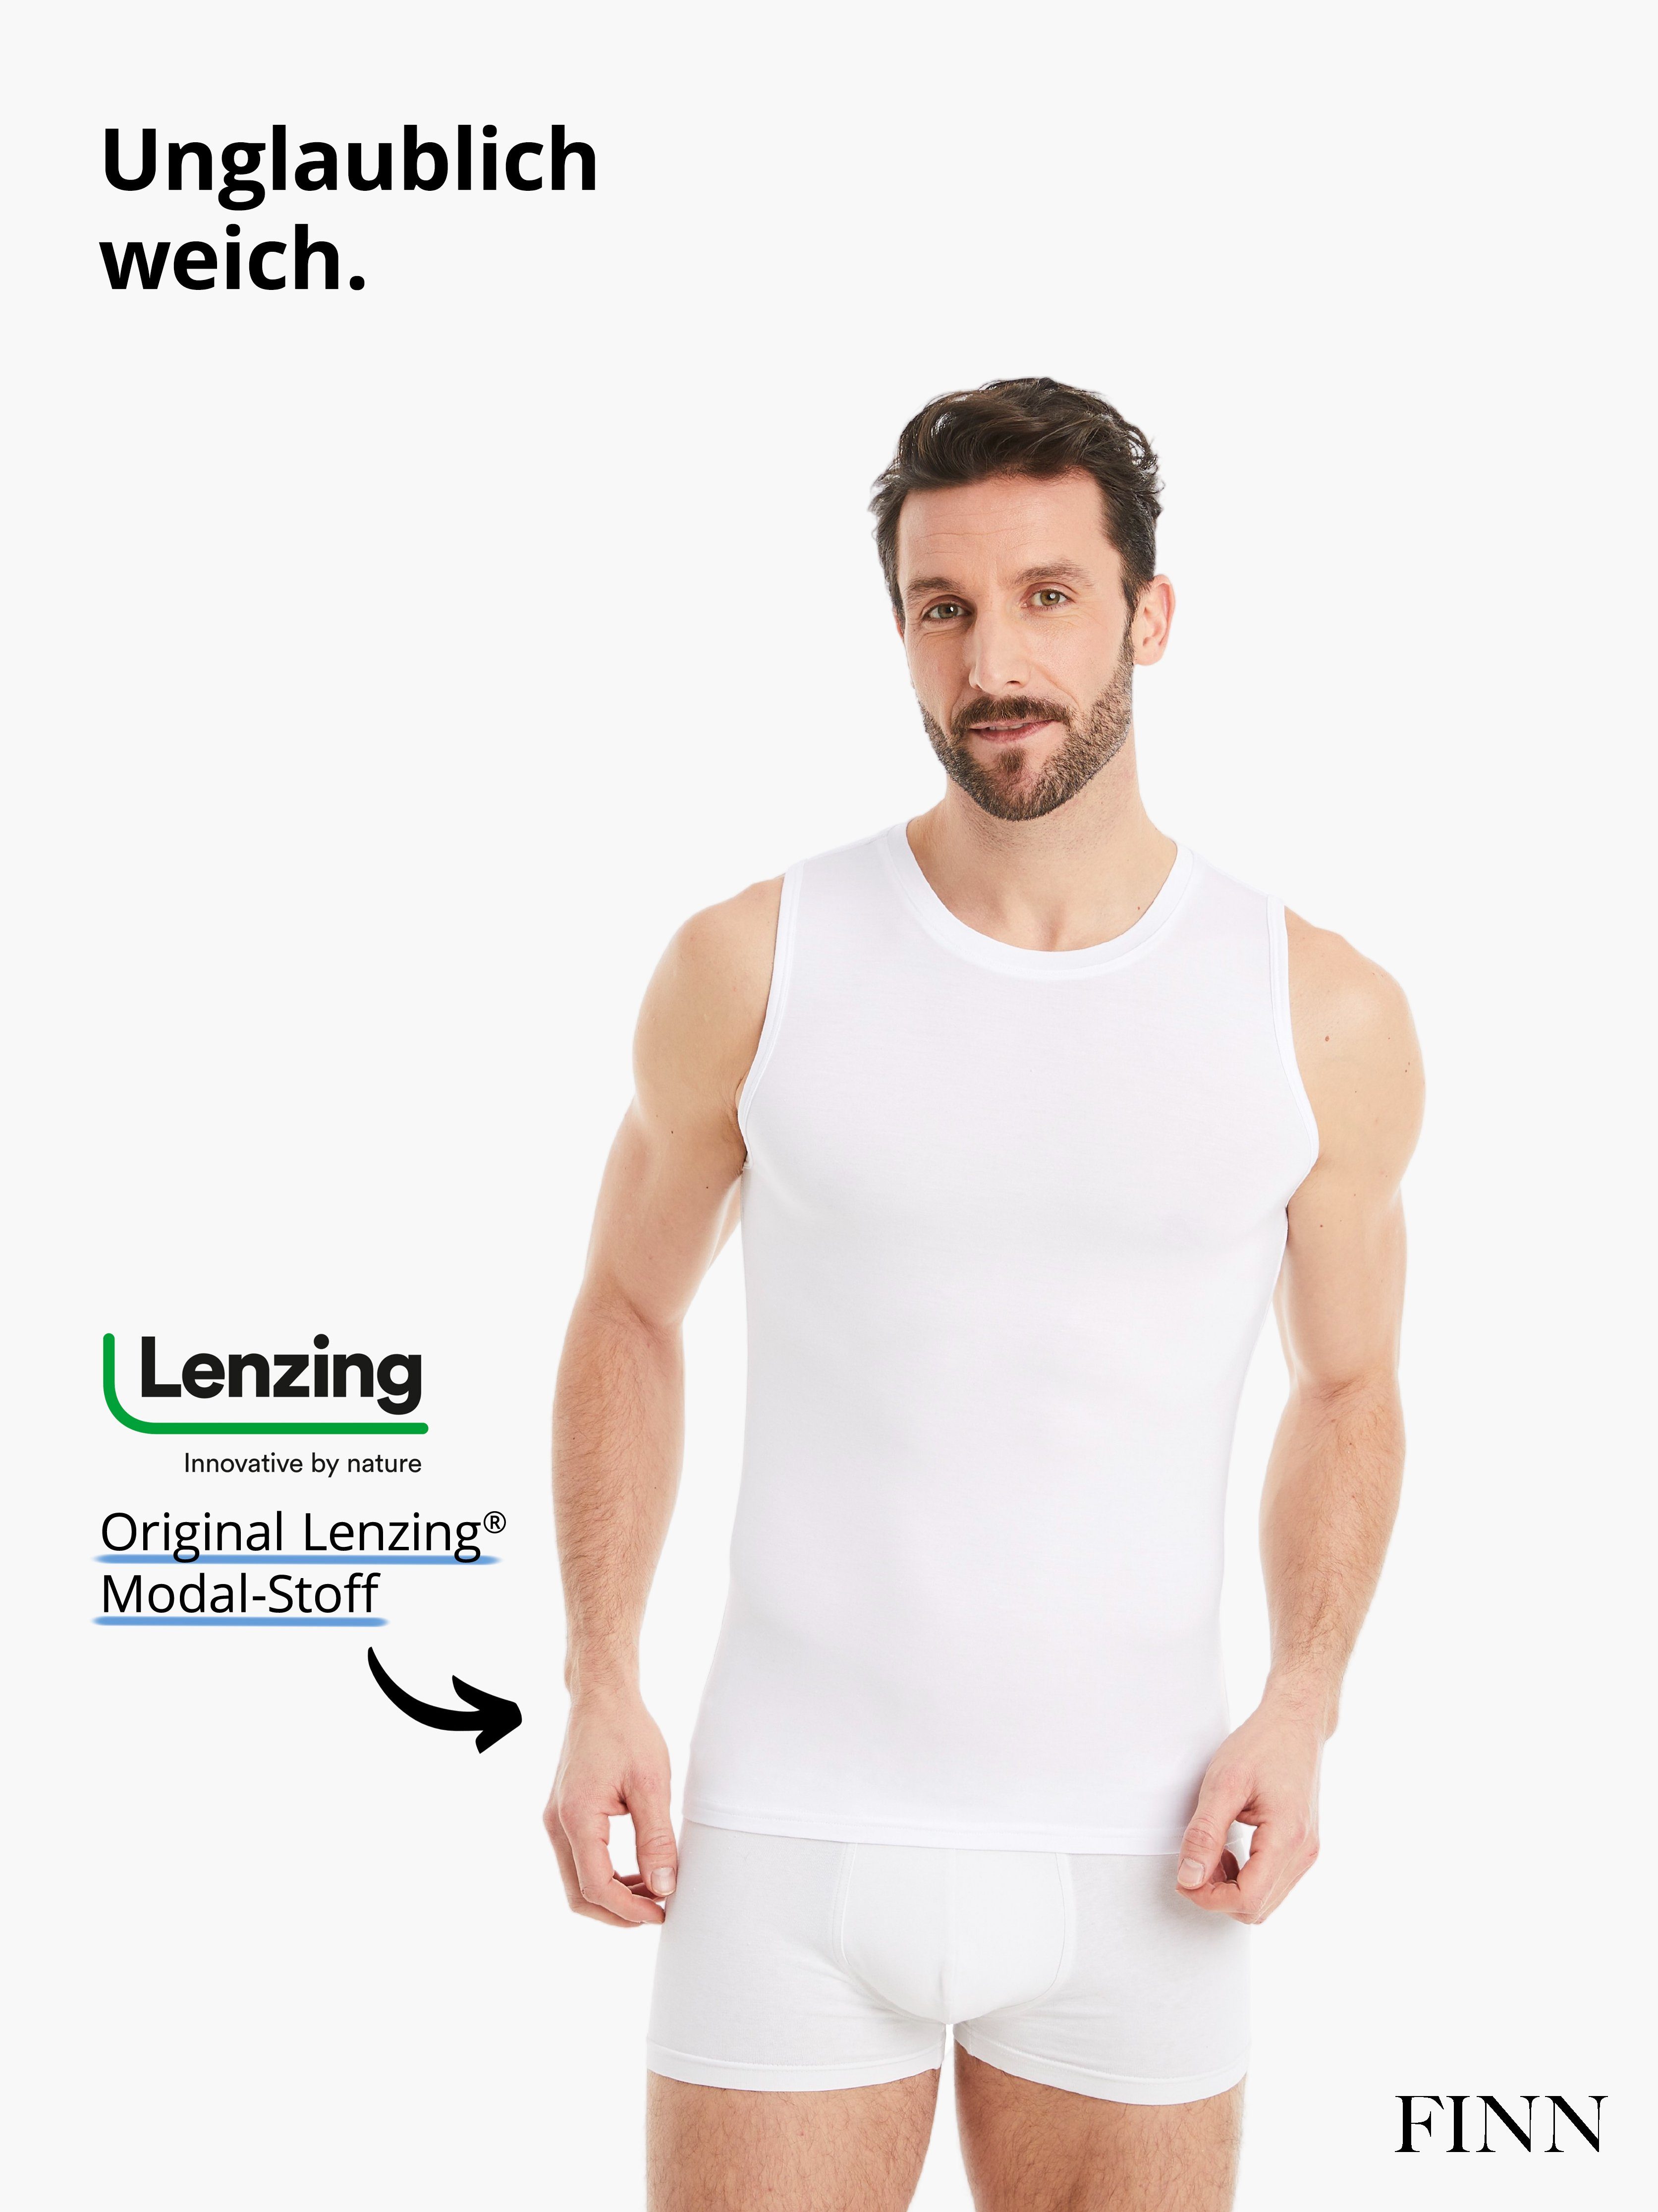 Unterhemd mit Ärmellos Stoff, Design Achselhemd Herren Rundhals feiner Weiß FINN Business Micro-Modal maximaler Tragekomfort